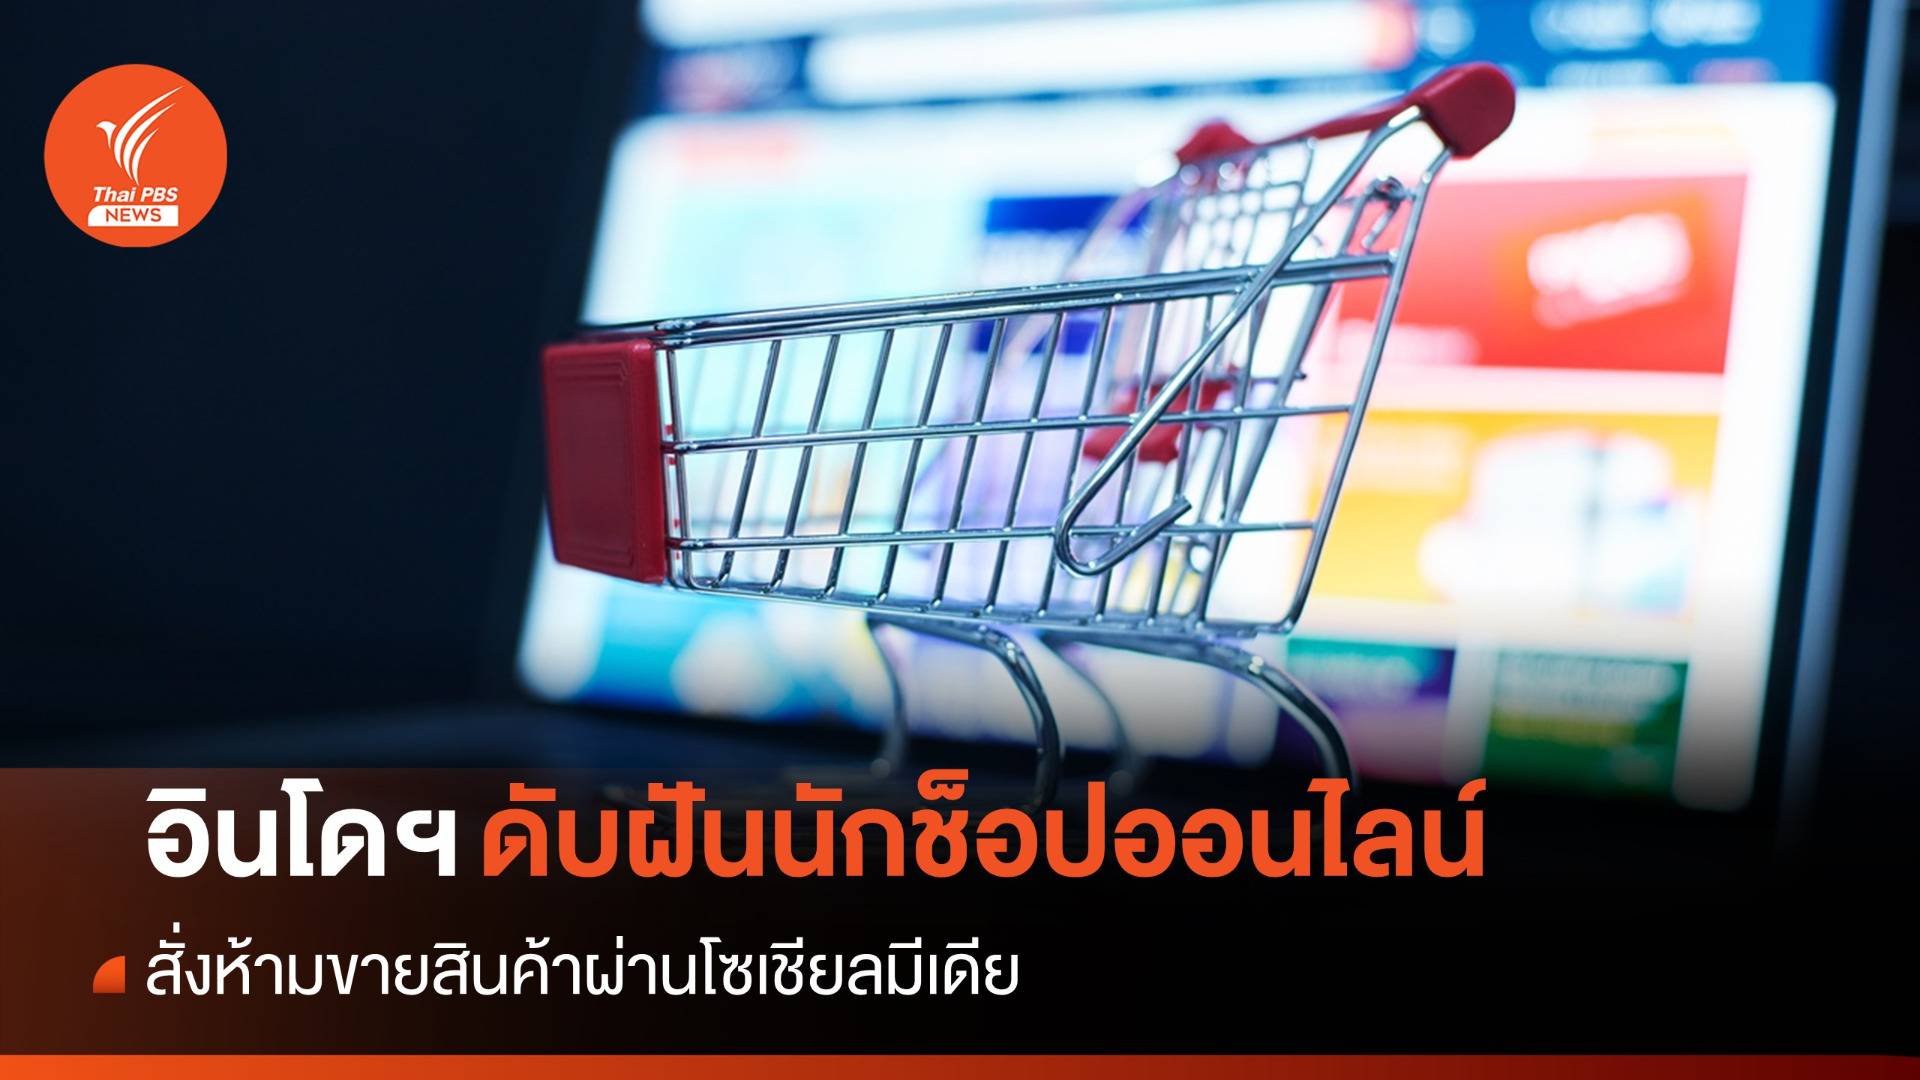 "อินโดนีเซีย" สั่งห้ามซื้อขายสินค้าผ่านสื่อออนไลน์